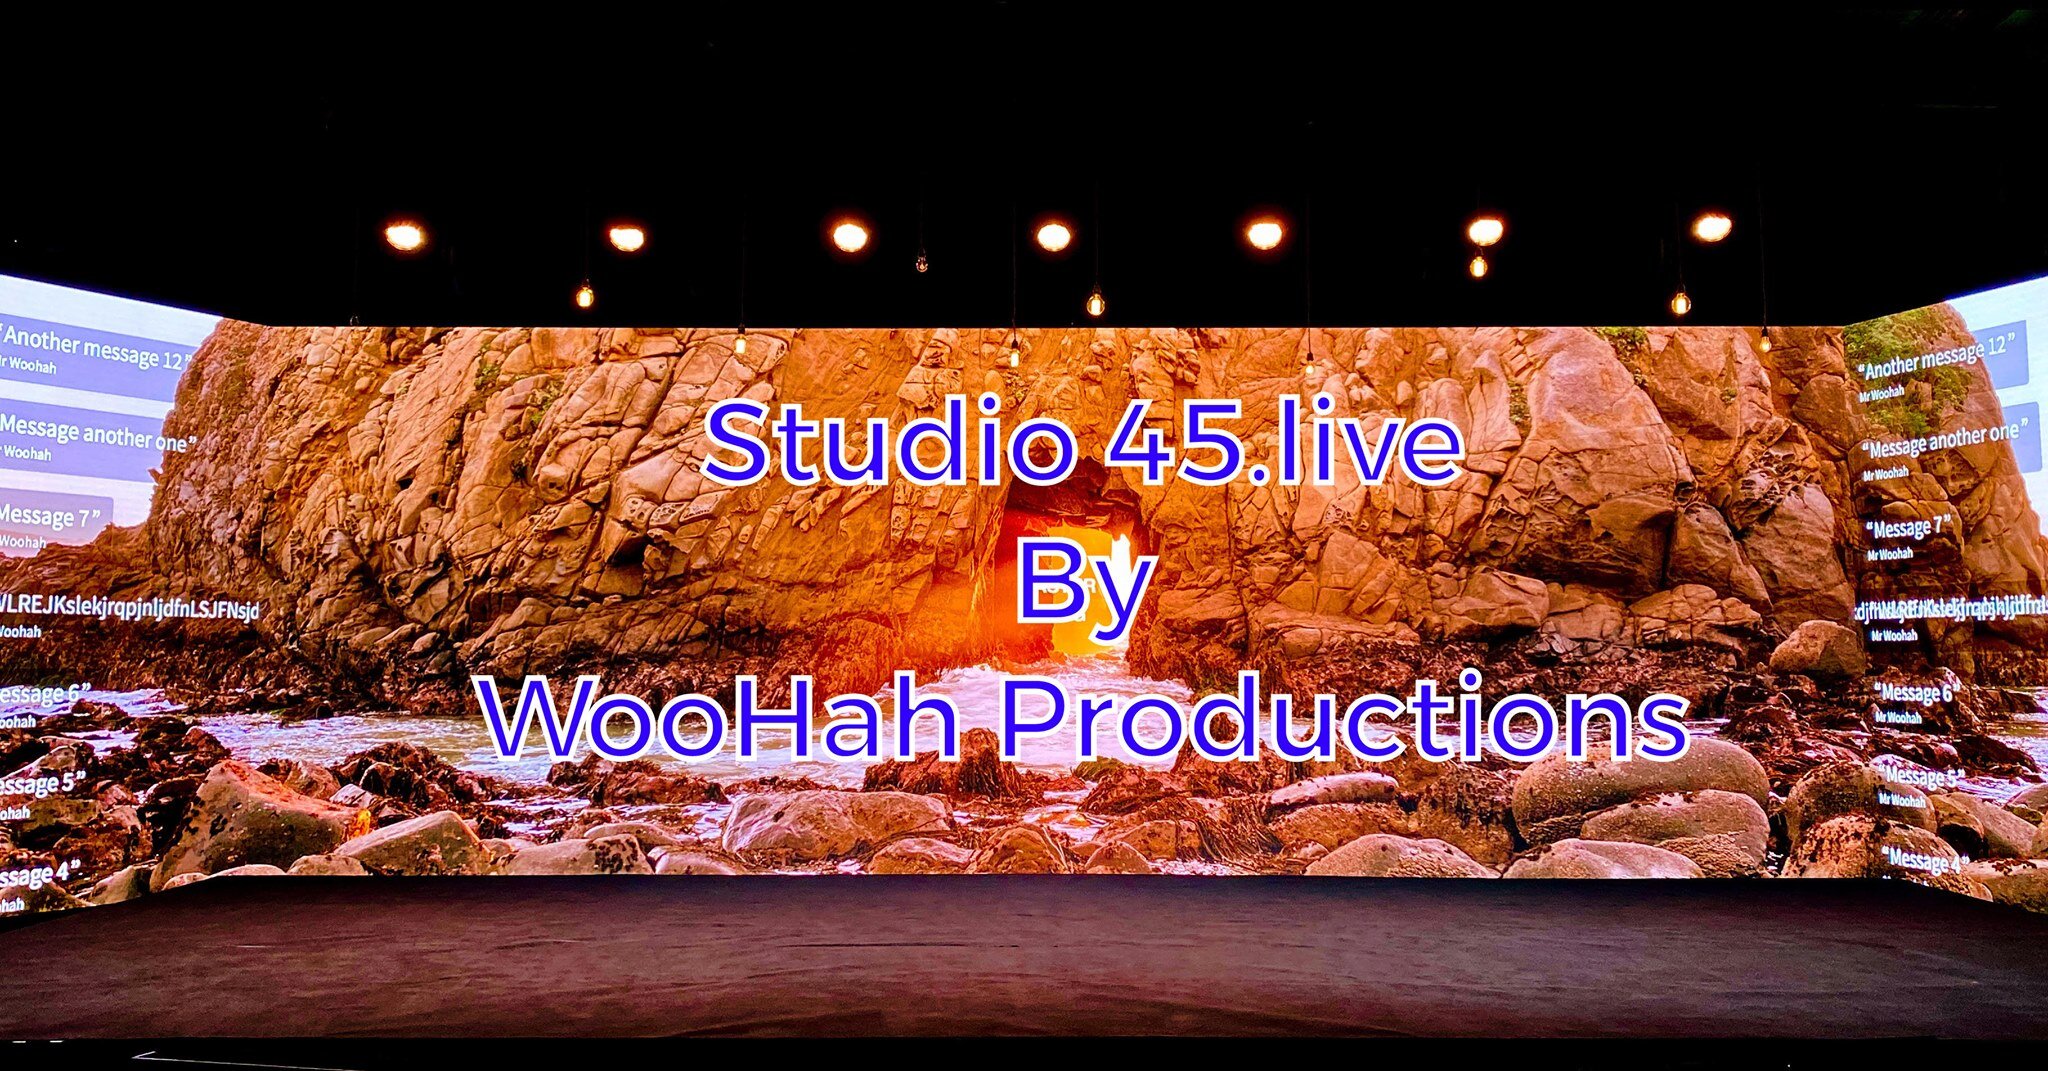 Studio45.live Backdrop.jpg